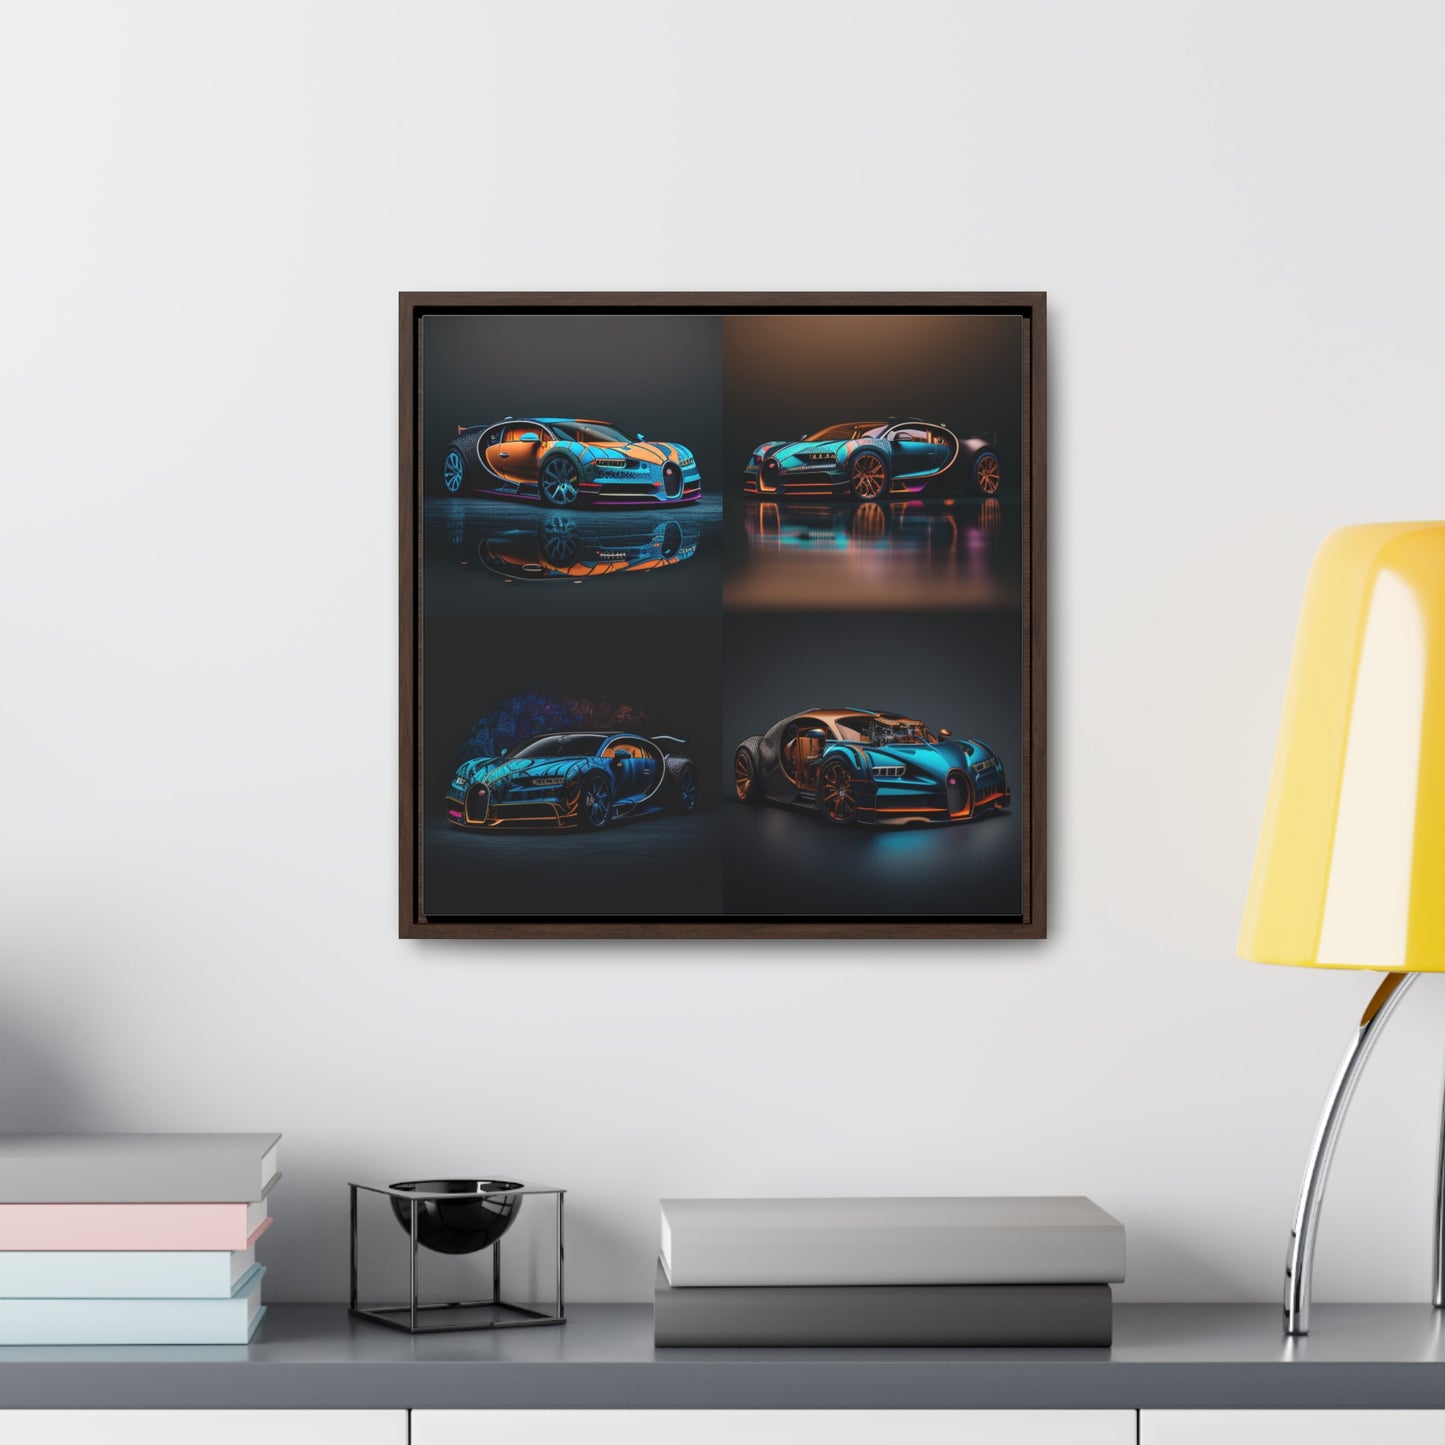 Gallery Canvas Wraps, Square Frame Bugatti Blue 5